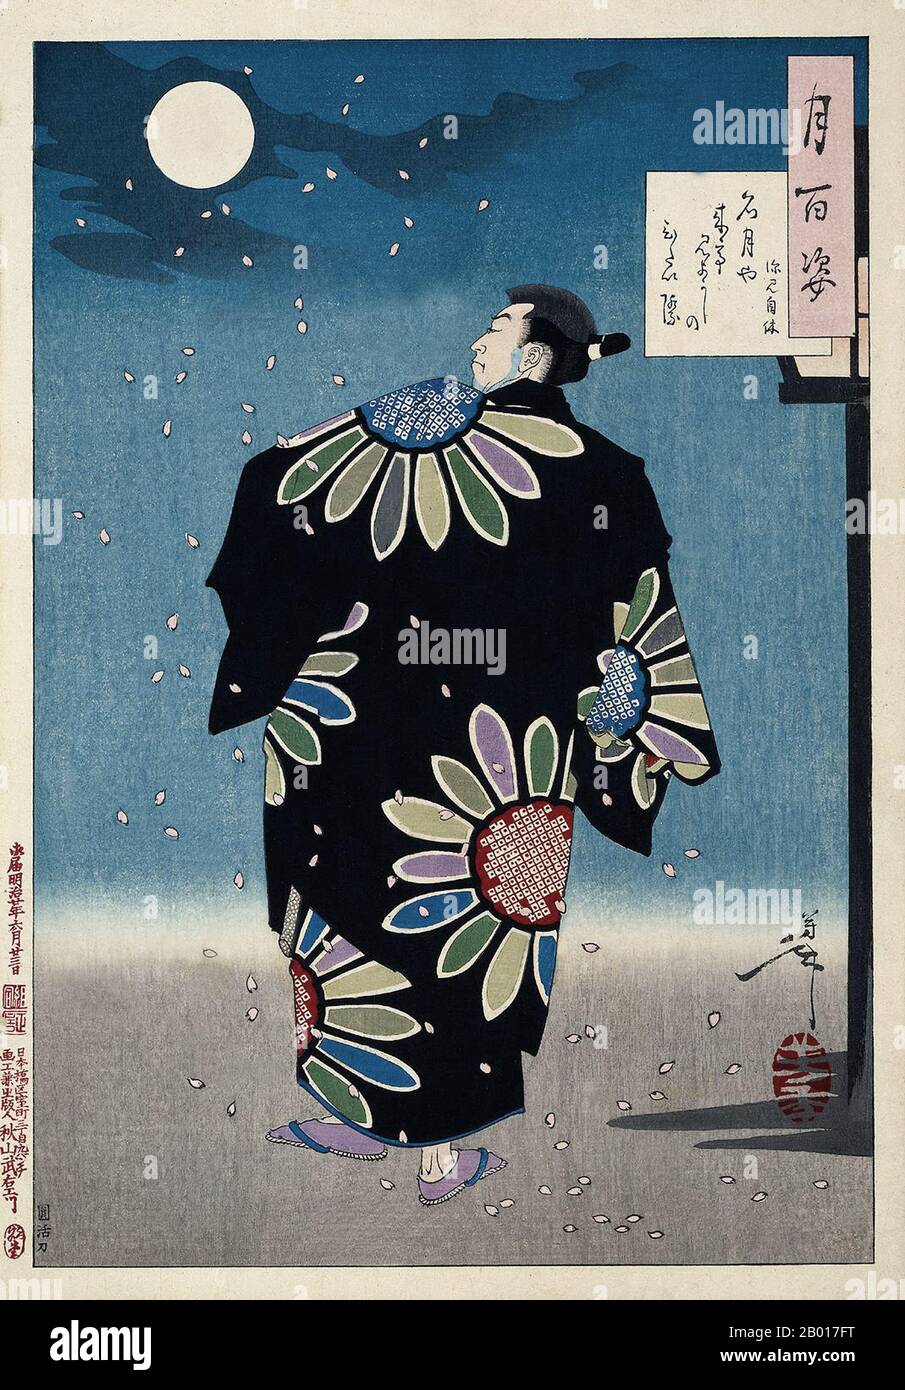 Japón: 'Fukami Jikyu'. Ukiyo-e estampado de bloques de madera de la serie 'Cien aspectos de la Luna' de Tsukioka Yoshitoshi (30 de abril de 1839 - 9 de junio de 1892), 1887. Fukami Jikyu, un héroe ficticio japonés - similar en reputación a Robin Hood de Inglaterra - camina orgullosamente en su elegante kimono mientras las flores de cereza caen alrededor de él. Yoshitoshi crea la sensación de una tranquila tarde de primavera en este tallado de madera post-Edo.- Junto a su firma en el cartouche en la parte superior derecha de la pintura, Yoshitoshi ha incluido un poema corto. Foto de stock